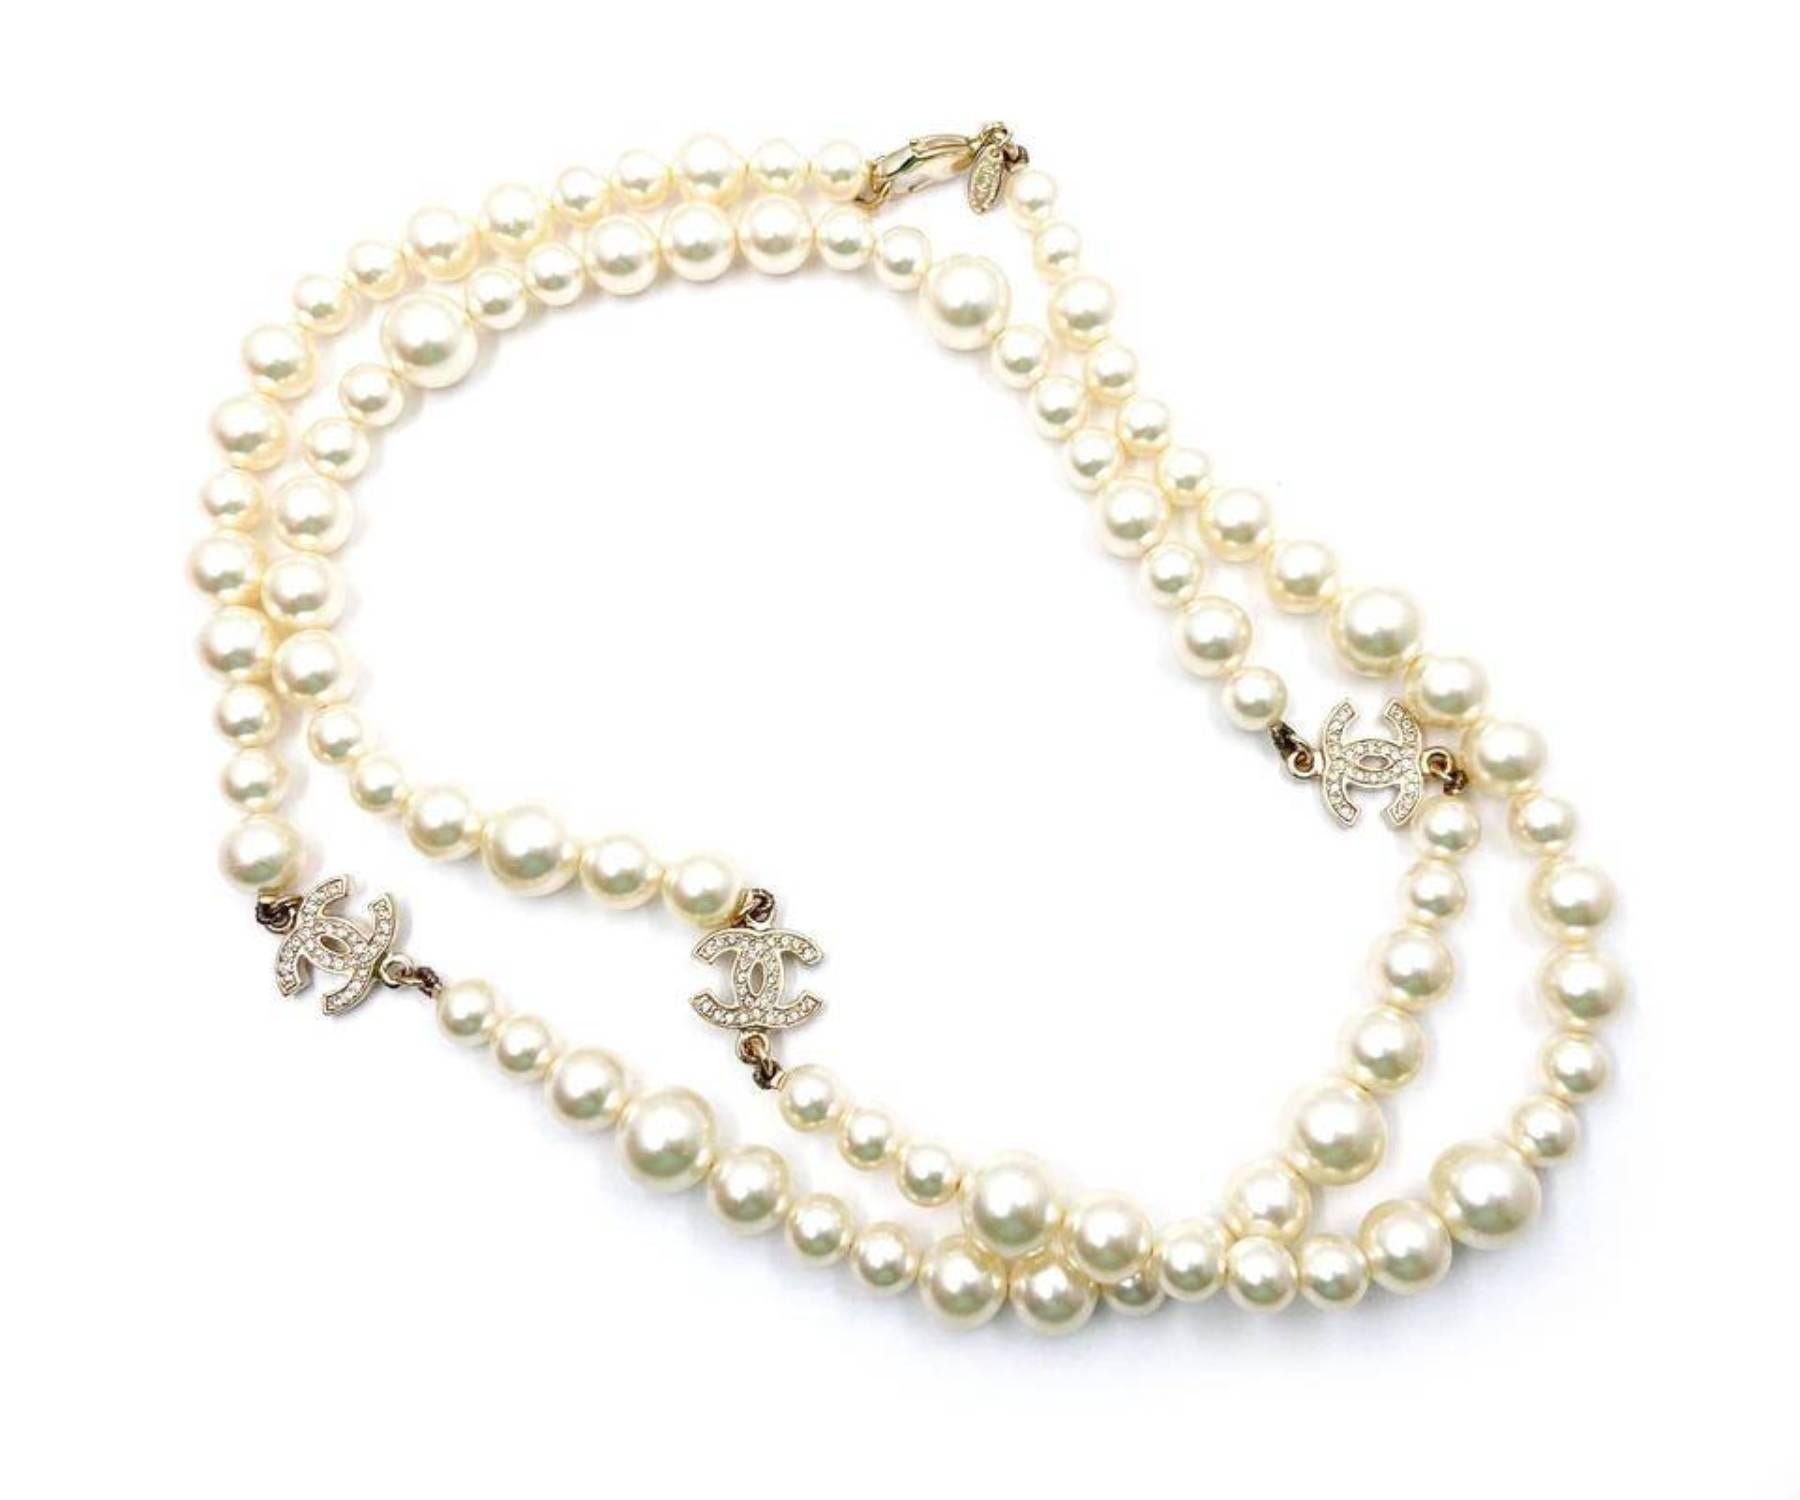 Chanel Classic 3 Gold CC Kristall lange Perlenkette

*Markiert 10
*Hergestellt in Frankreich
*Kommt mit Originalverpackung

-Es ist ungefähr 36